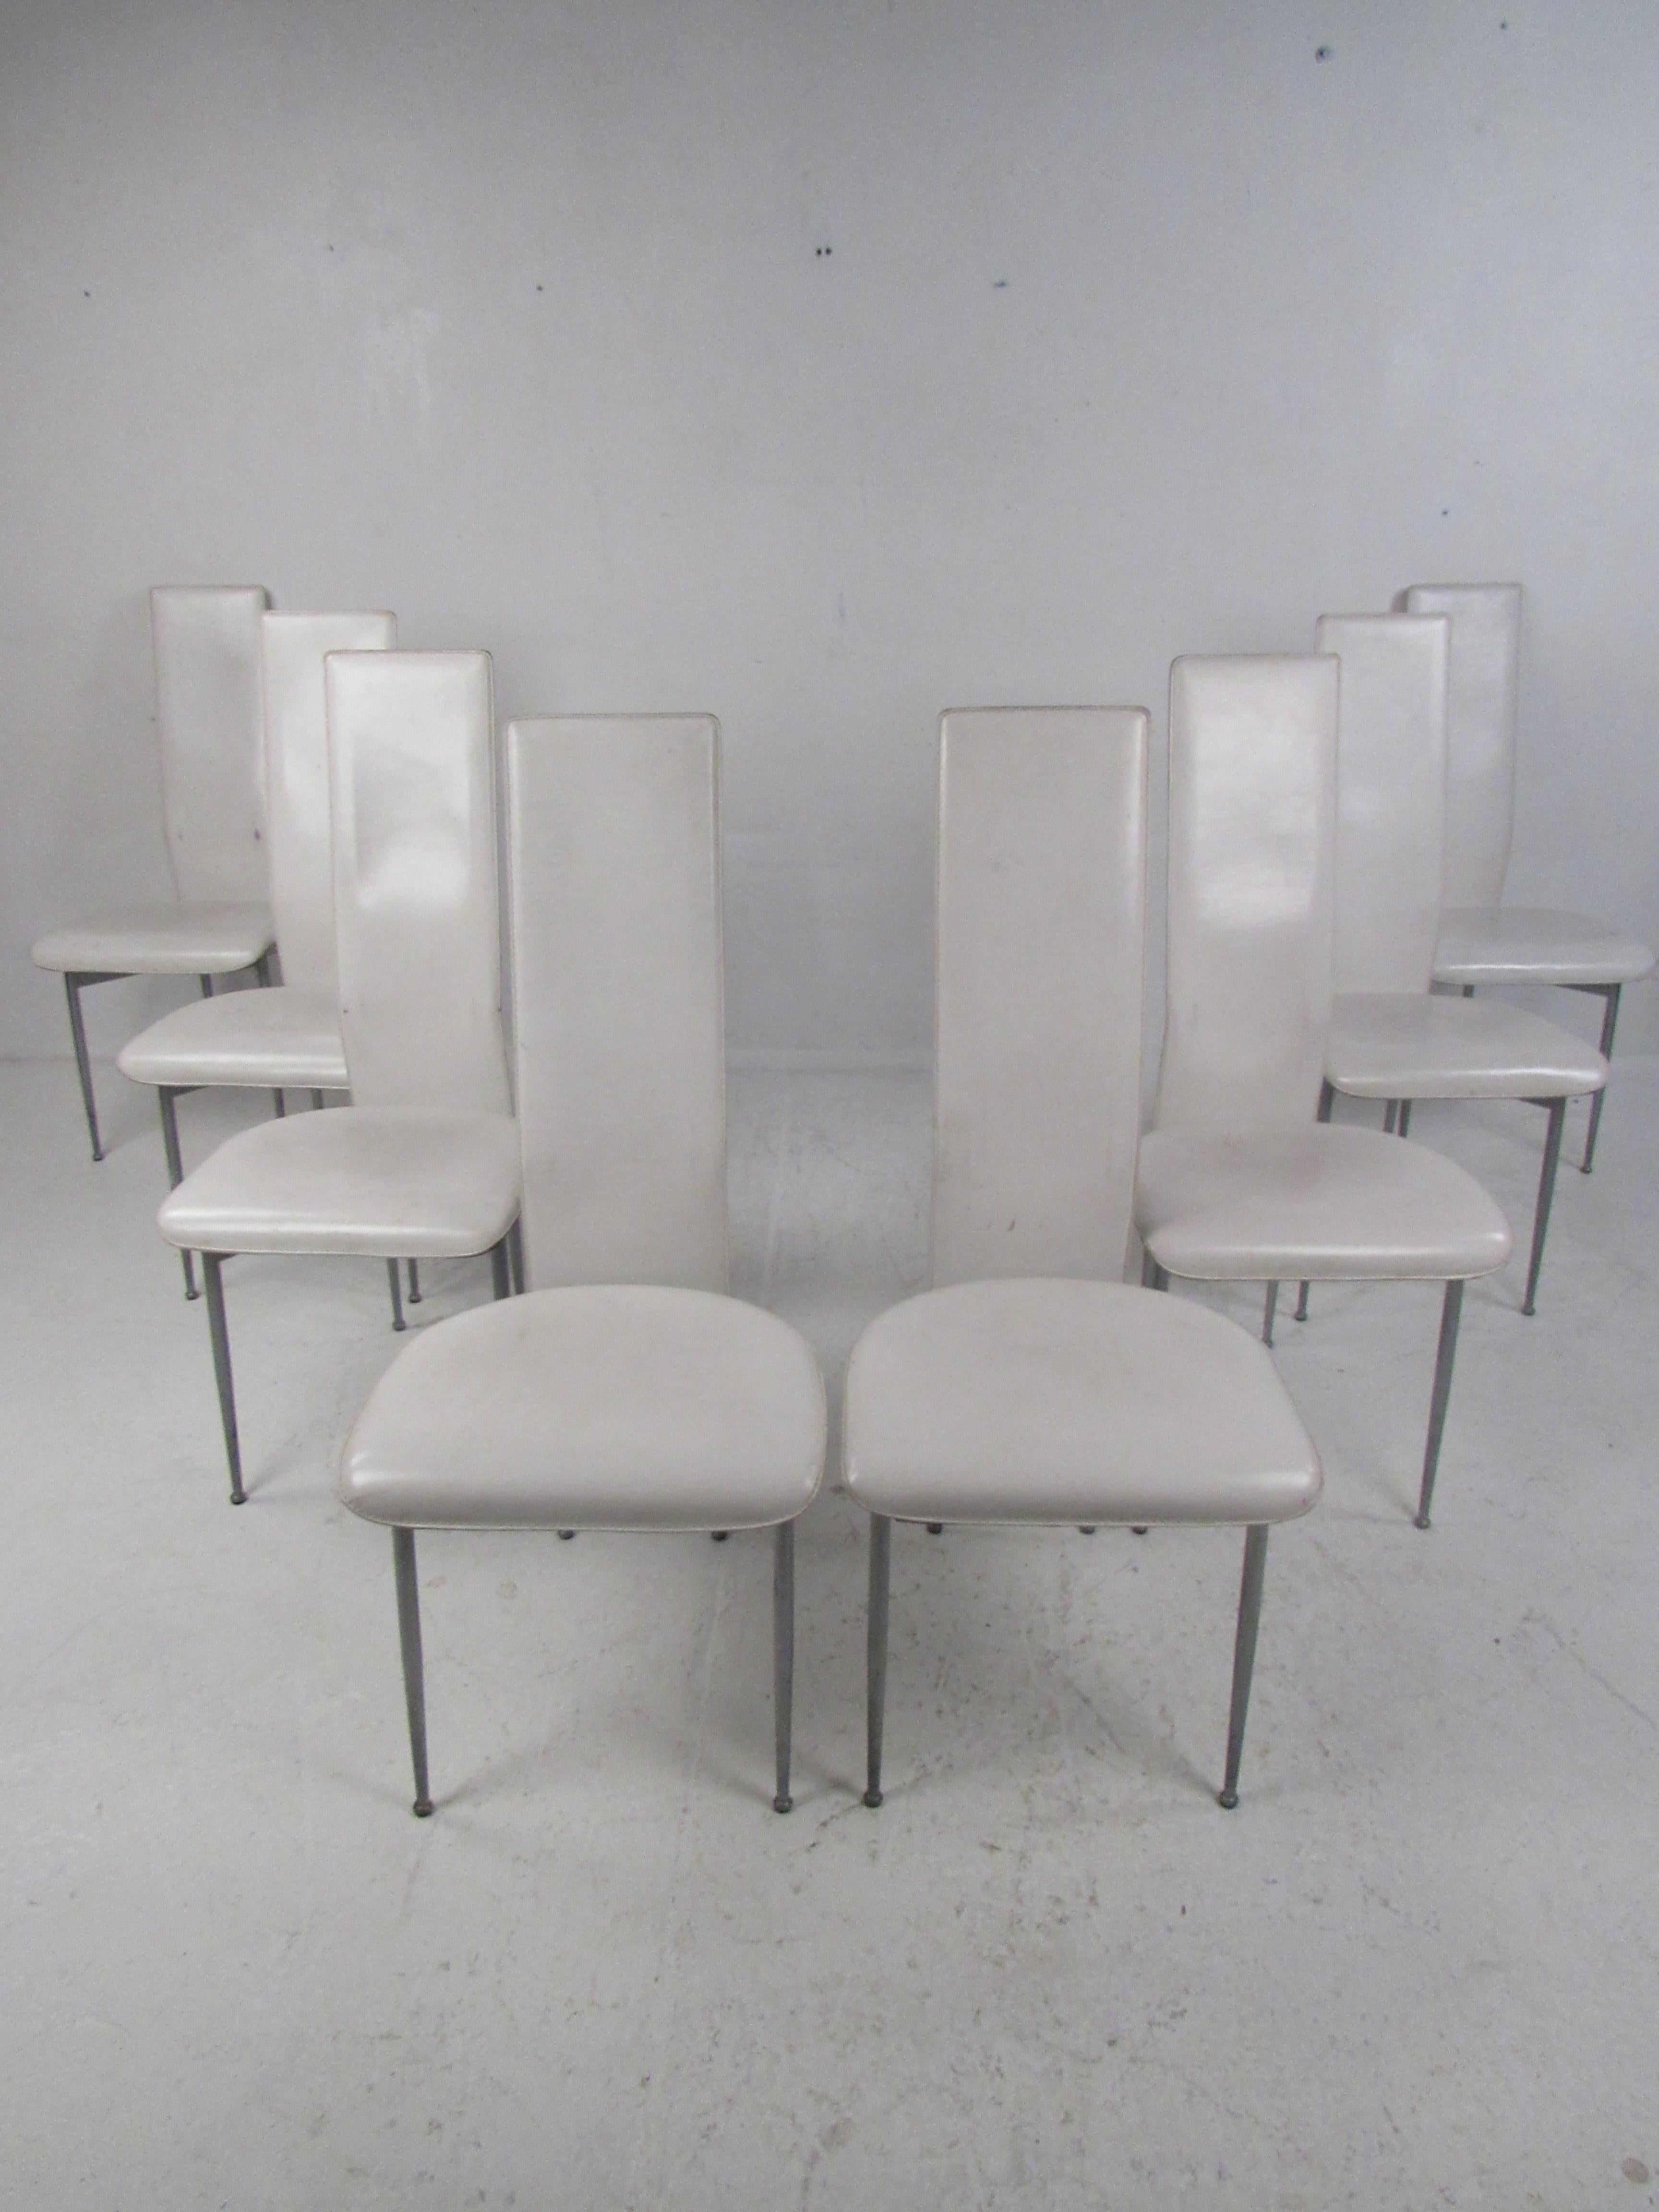 Un ensemble élégant de huit chaises de salle à manger à haut dossier, de style moderne du milieu du siècle, avec une base métallique inhabituelle. Son design épuré assure un confort maximal grâce à son haut dossier et à son assise épaisse et